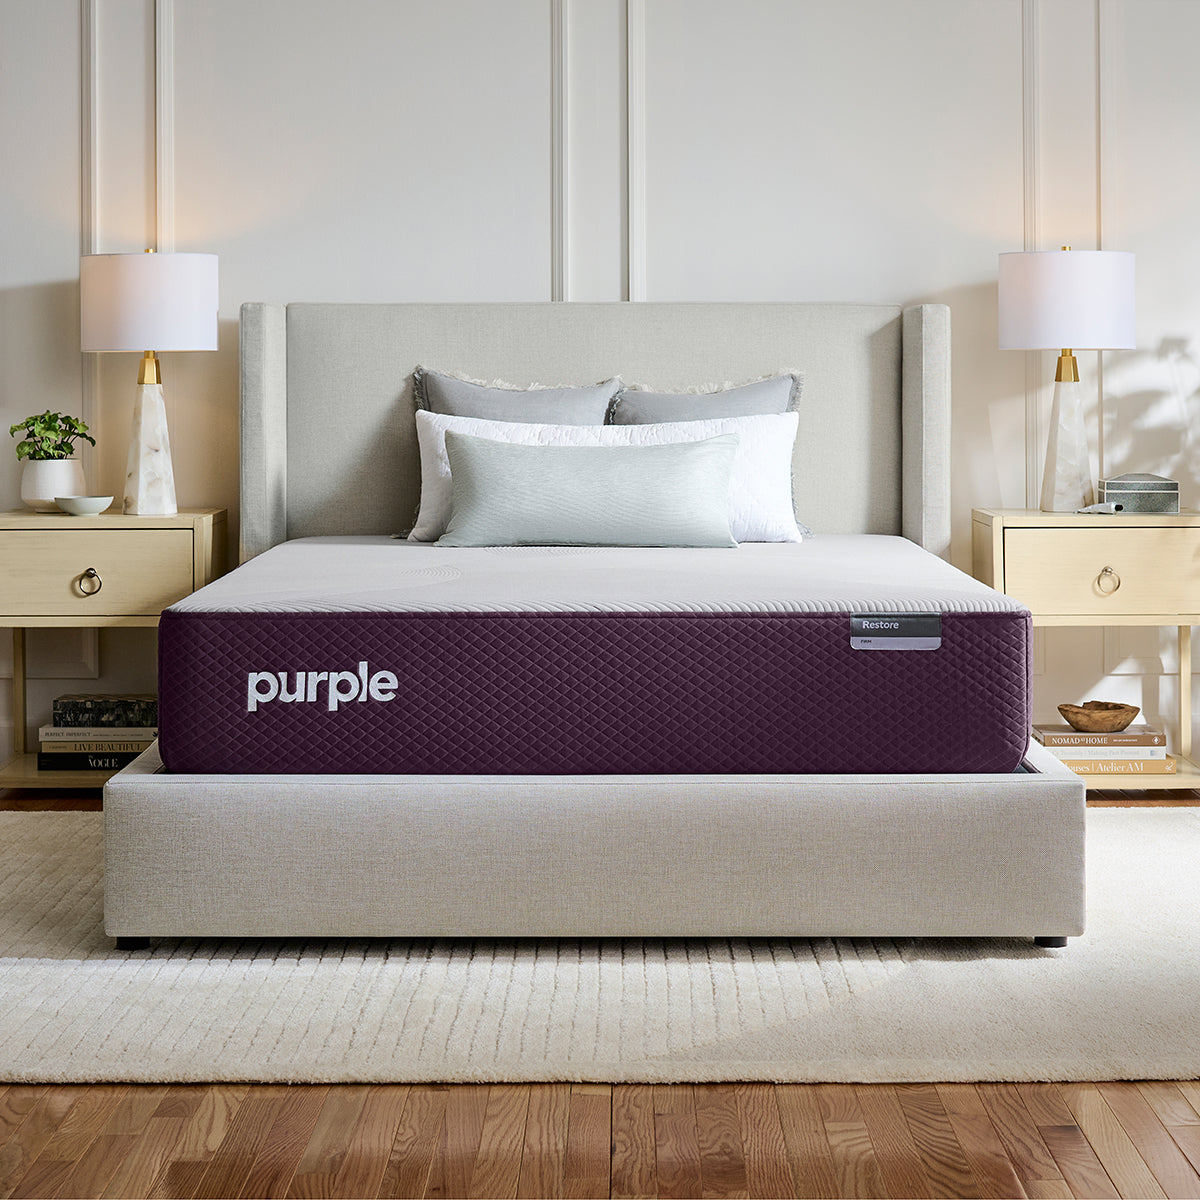 Purple Restore Firm Mattress in bedroom